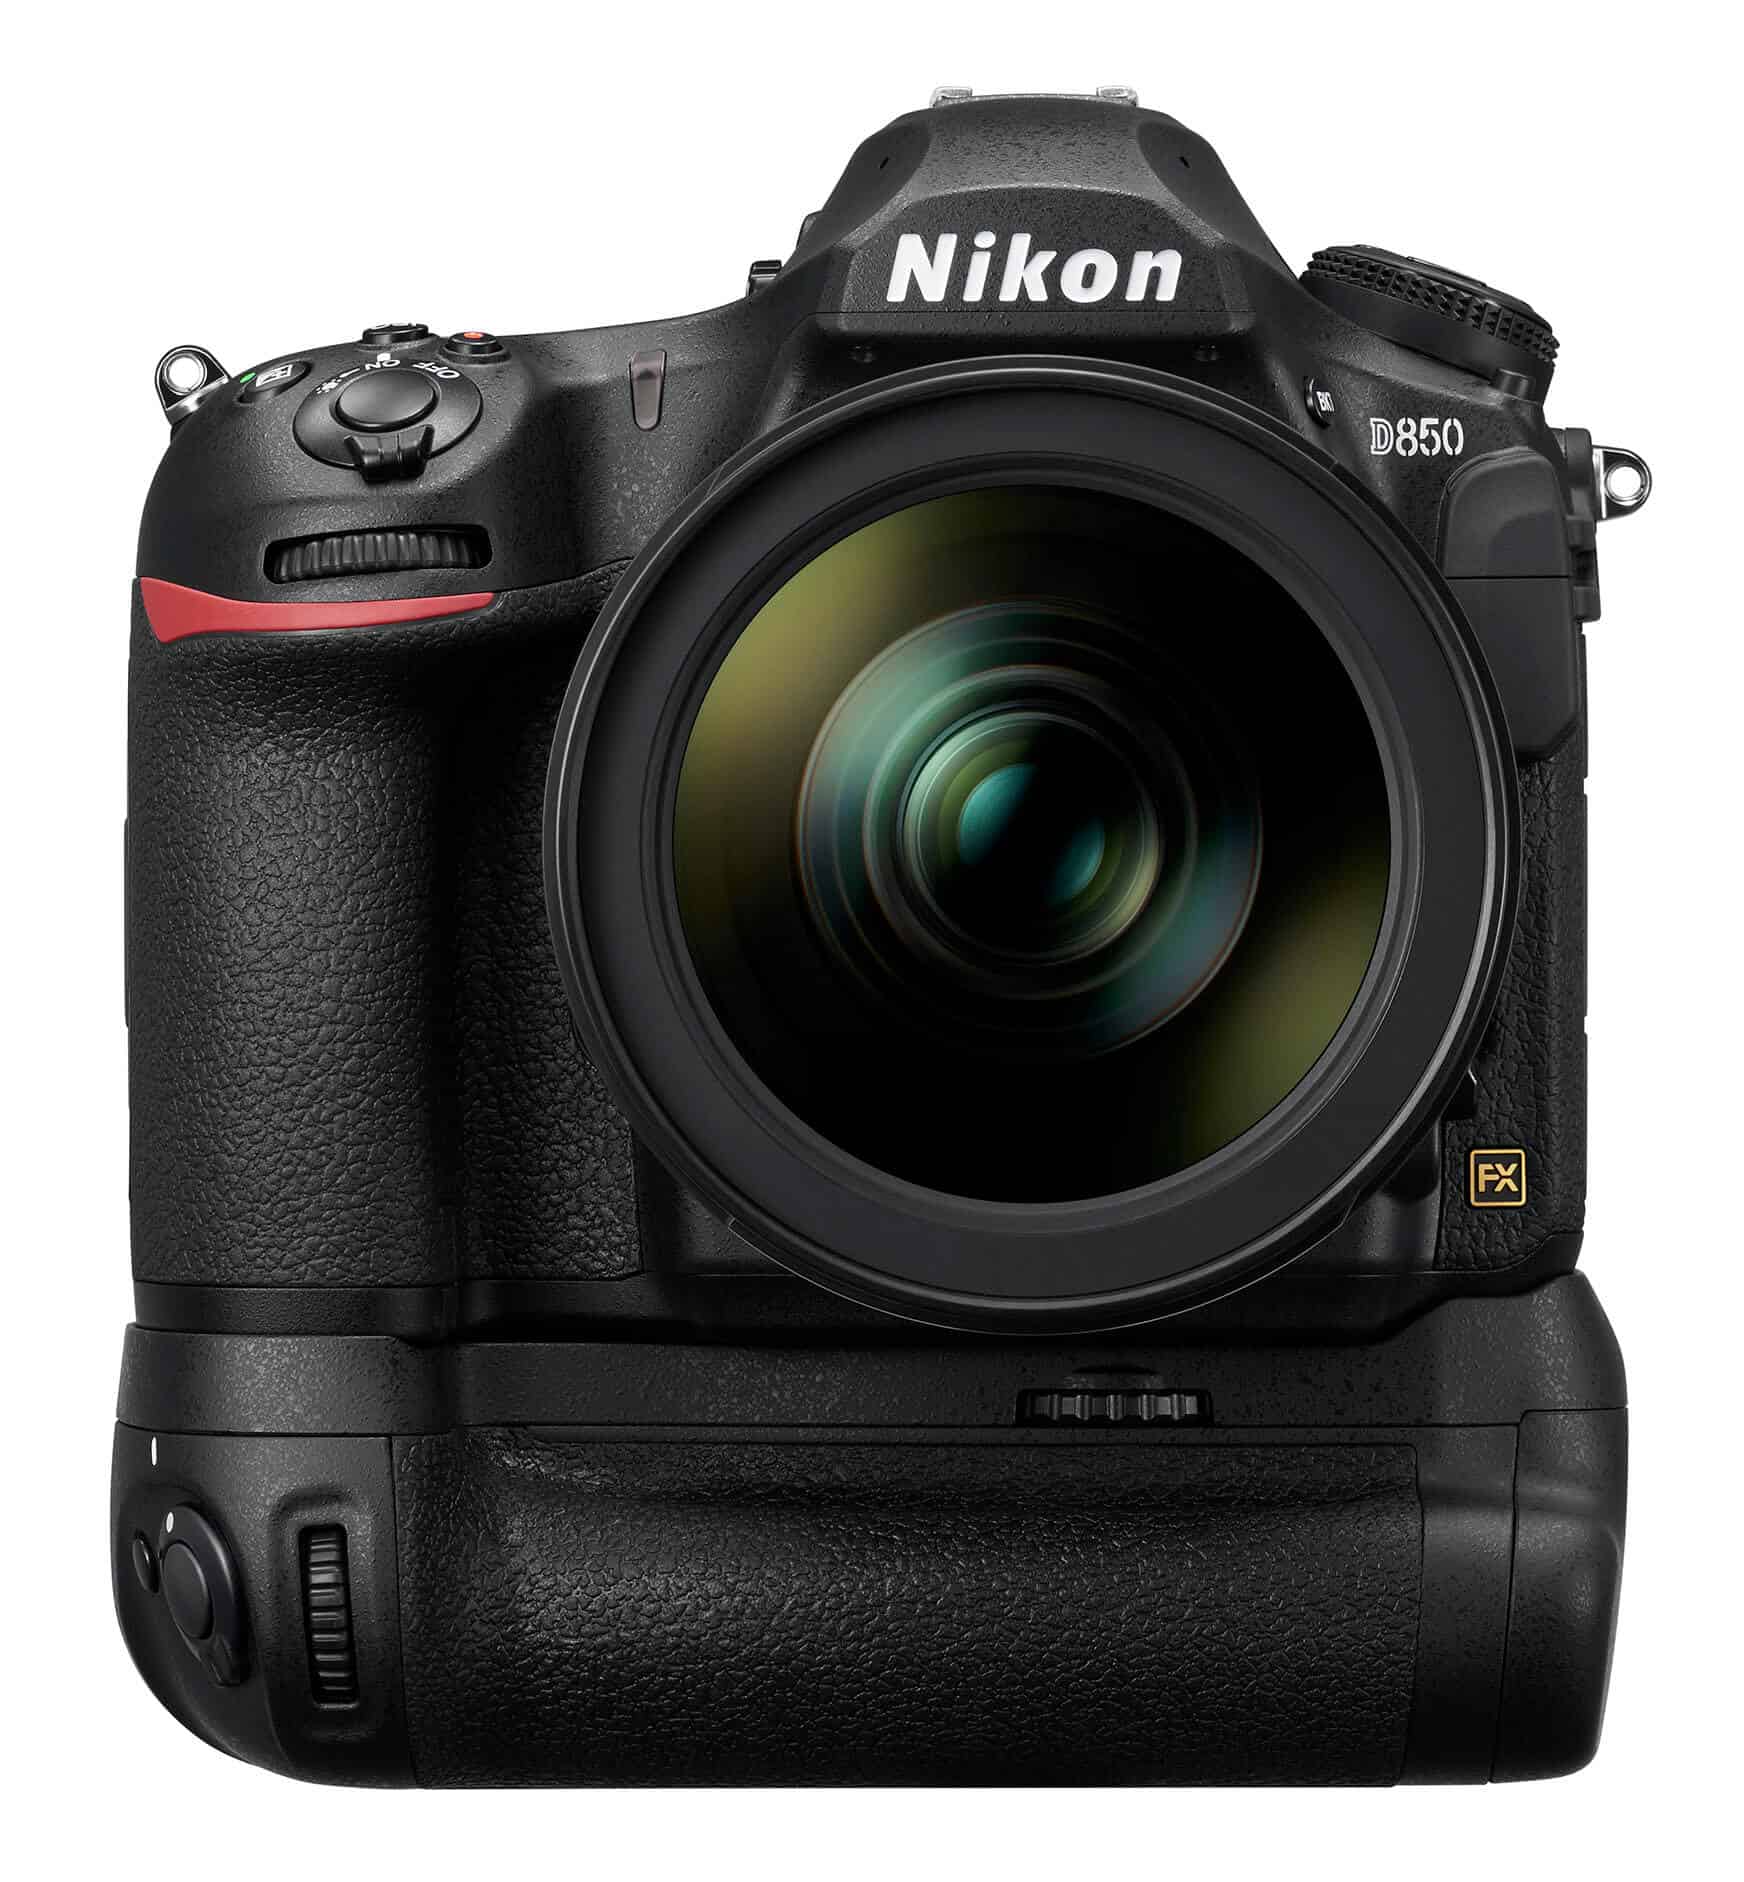 निकॉन ने Nikon D850 लॉन्च किया।